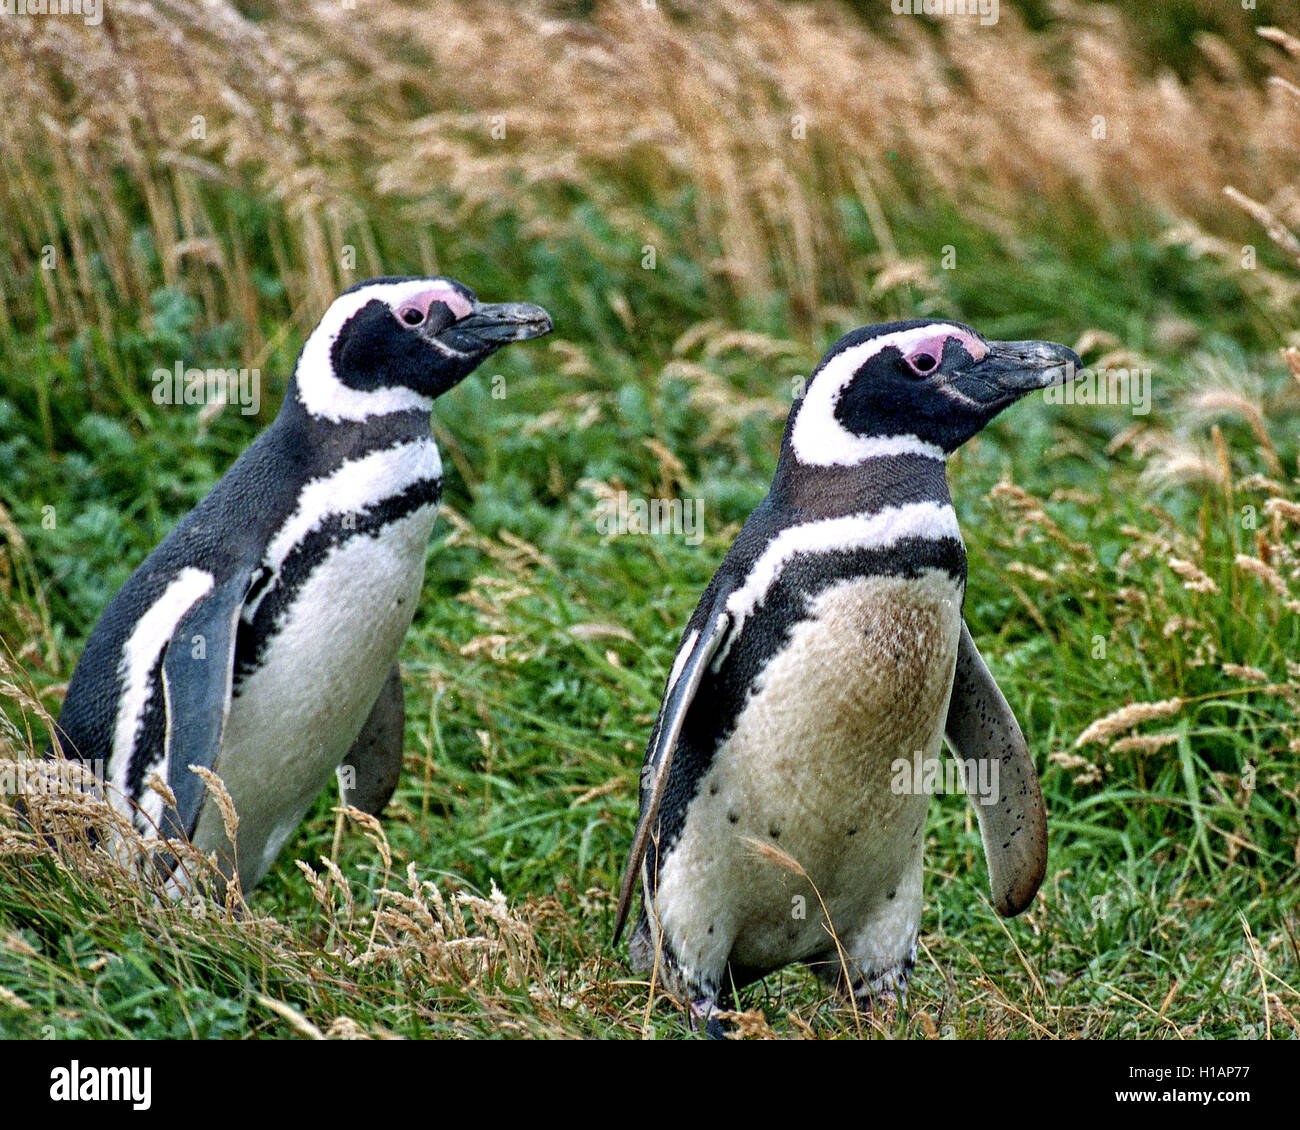 Regione di Magallanes, Cile. Il 22 febbraio, 2003. Una coppia di i pinguini di Magellano (Spheniscus magellanicus) all'Otway Sound riserva dei pinguini in Cile, 40 miglia (65km) da Punta Arenas. Una popolare attrazione turistica, i pinguini vi ritorna ogni anno per la stagione degli amori. Essi sono stati nominati dopo l'esploratore portoghese Ferdinando Magellano, che hanno individuato gli uccelli nel 1520. © Arnold Drapkin/ZUMA filo/Alamy Live News Foto Stock